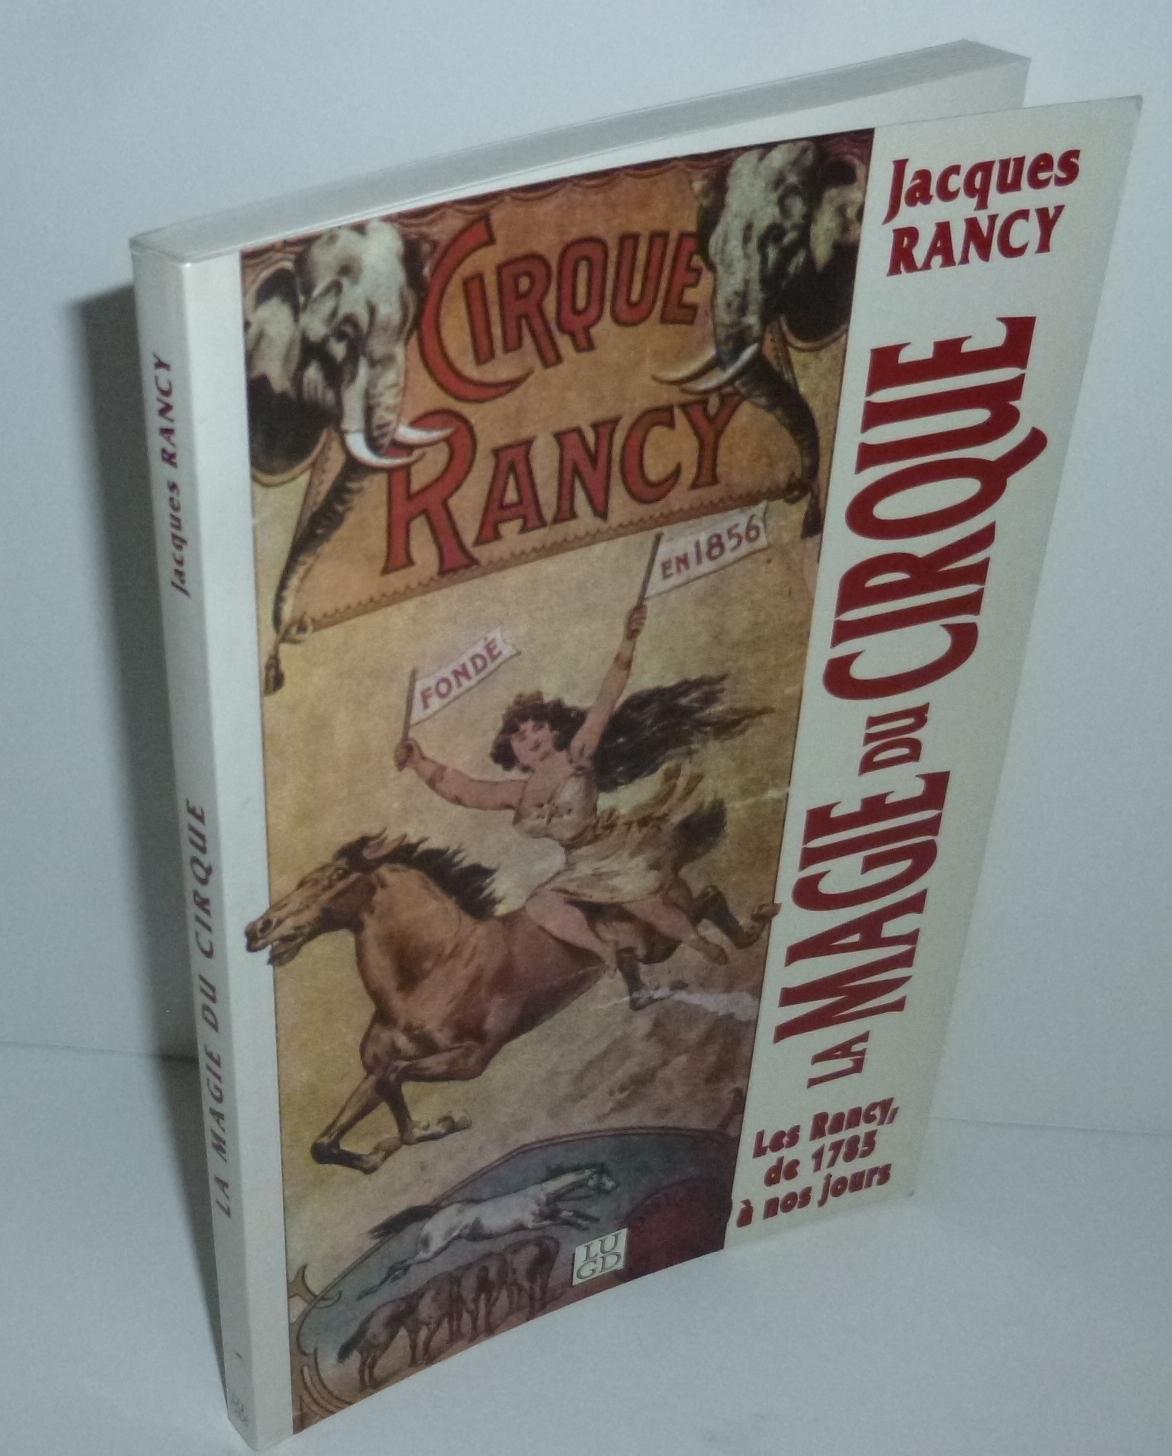 La magie du cirque. Les rancy de 1785 à nos jours. LUGD. Lyon. 1994. by  RANCY, Jacques